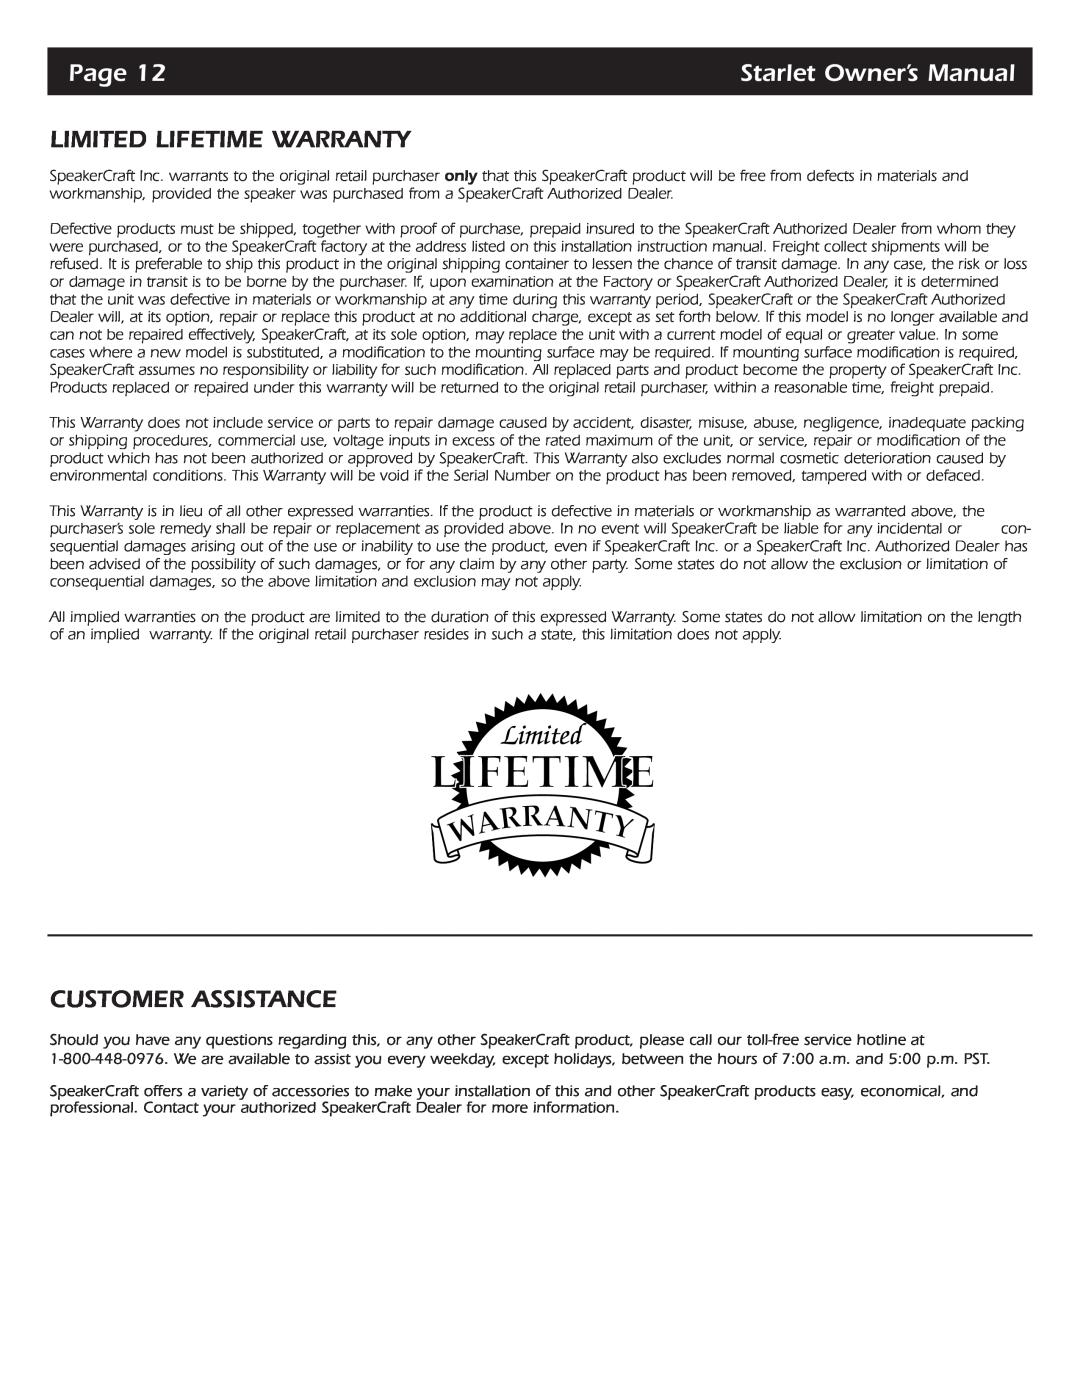 SpeakerCraft Starlet 6, Starlet 9, Starlet 4 owner manual Limited Lifetime Warranty, Customer Assistance, Page 